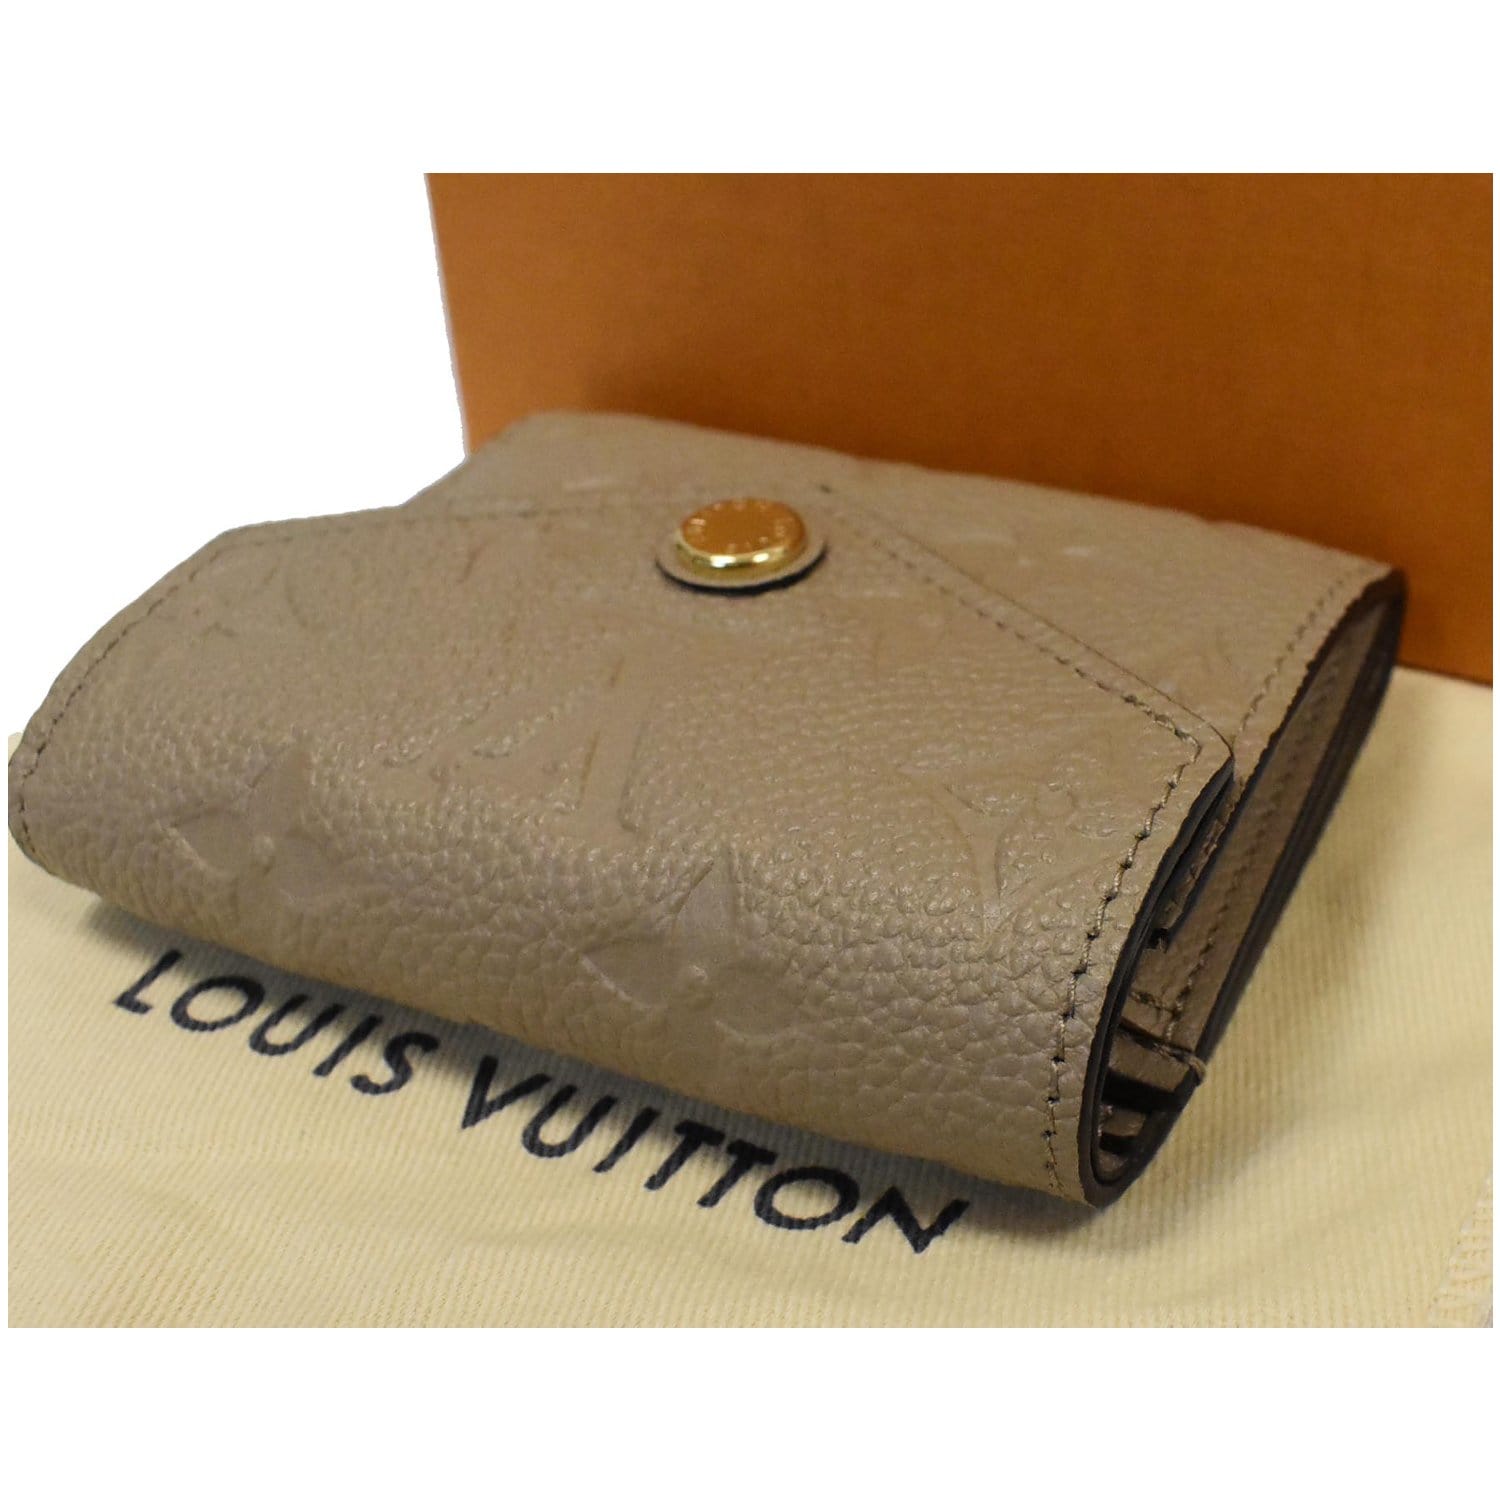 Louis Vuitton Empreinte wallet (GENUINE) on Mercari